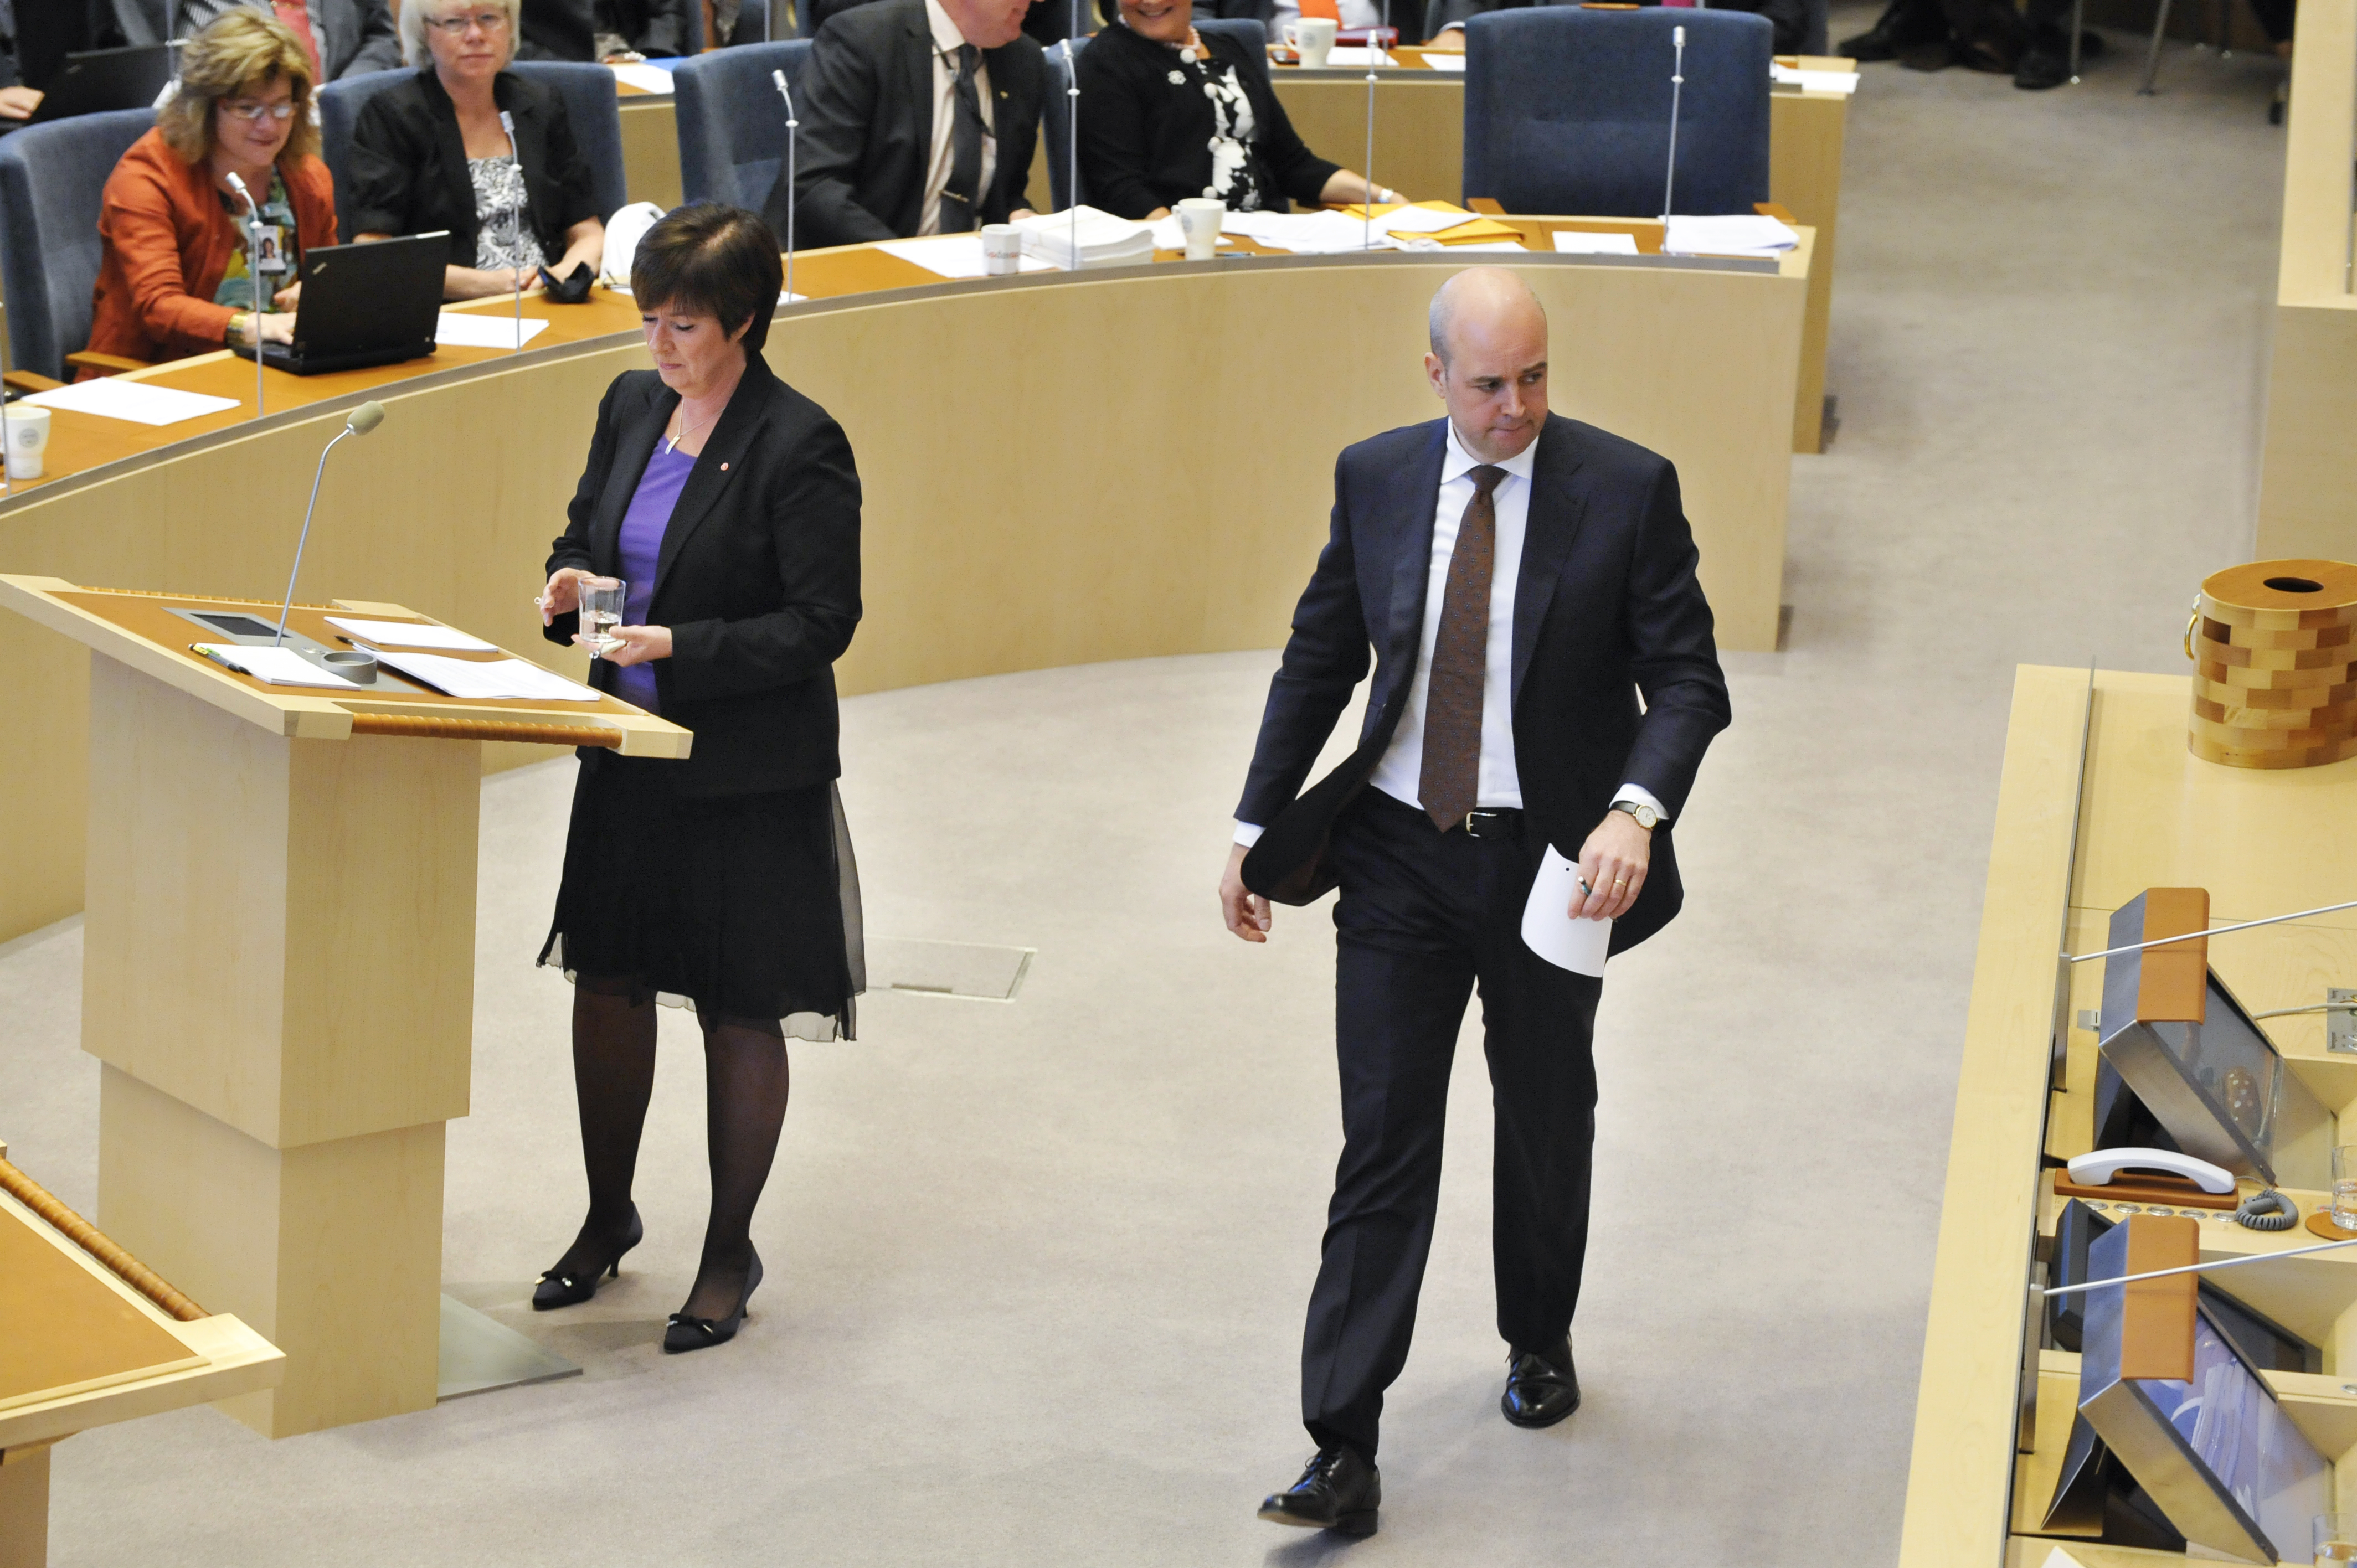 Och moderatledaren Fredrik Reinfeldt spöar Mona Sahlin med hästlängder.